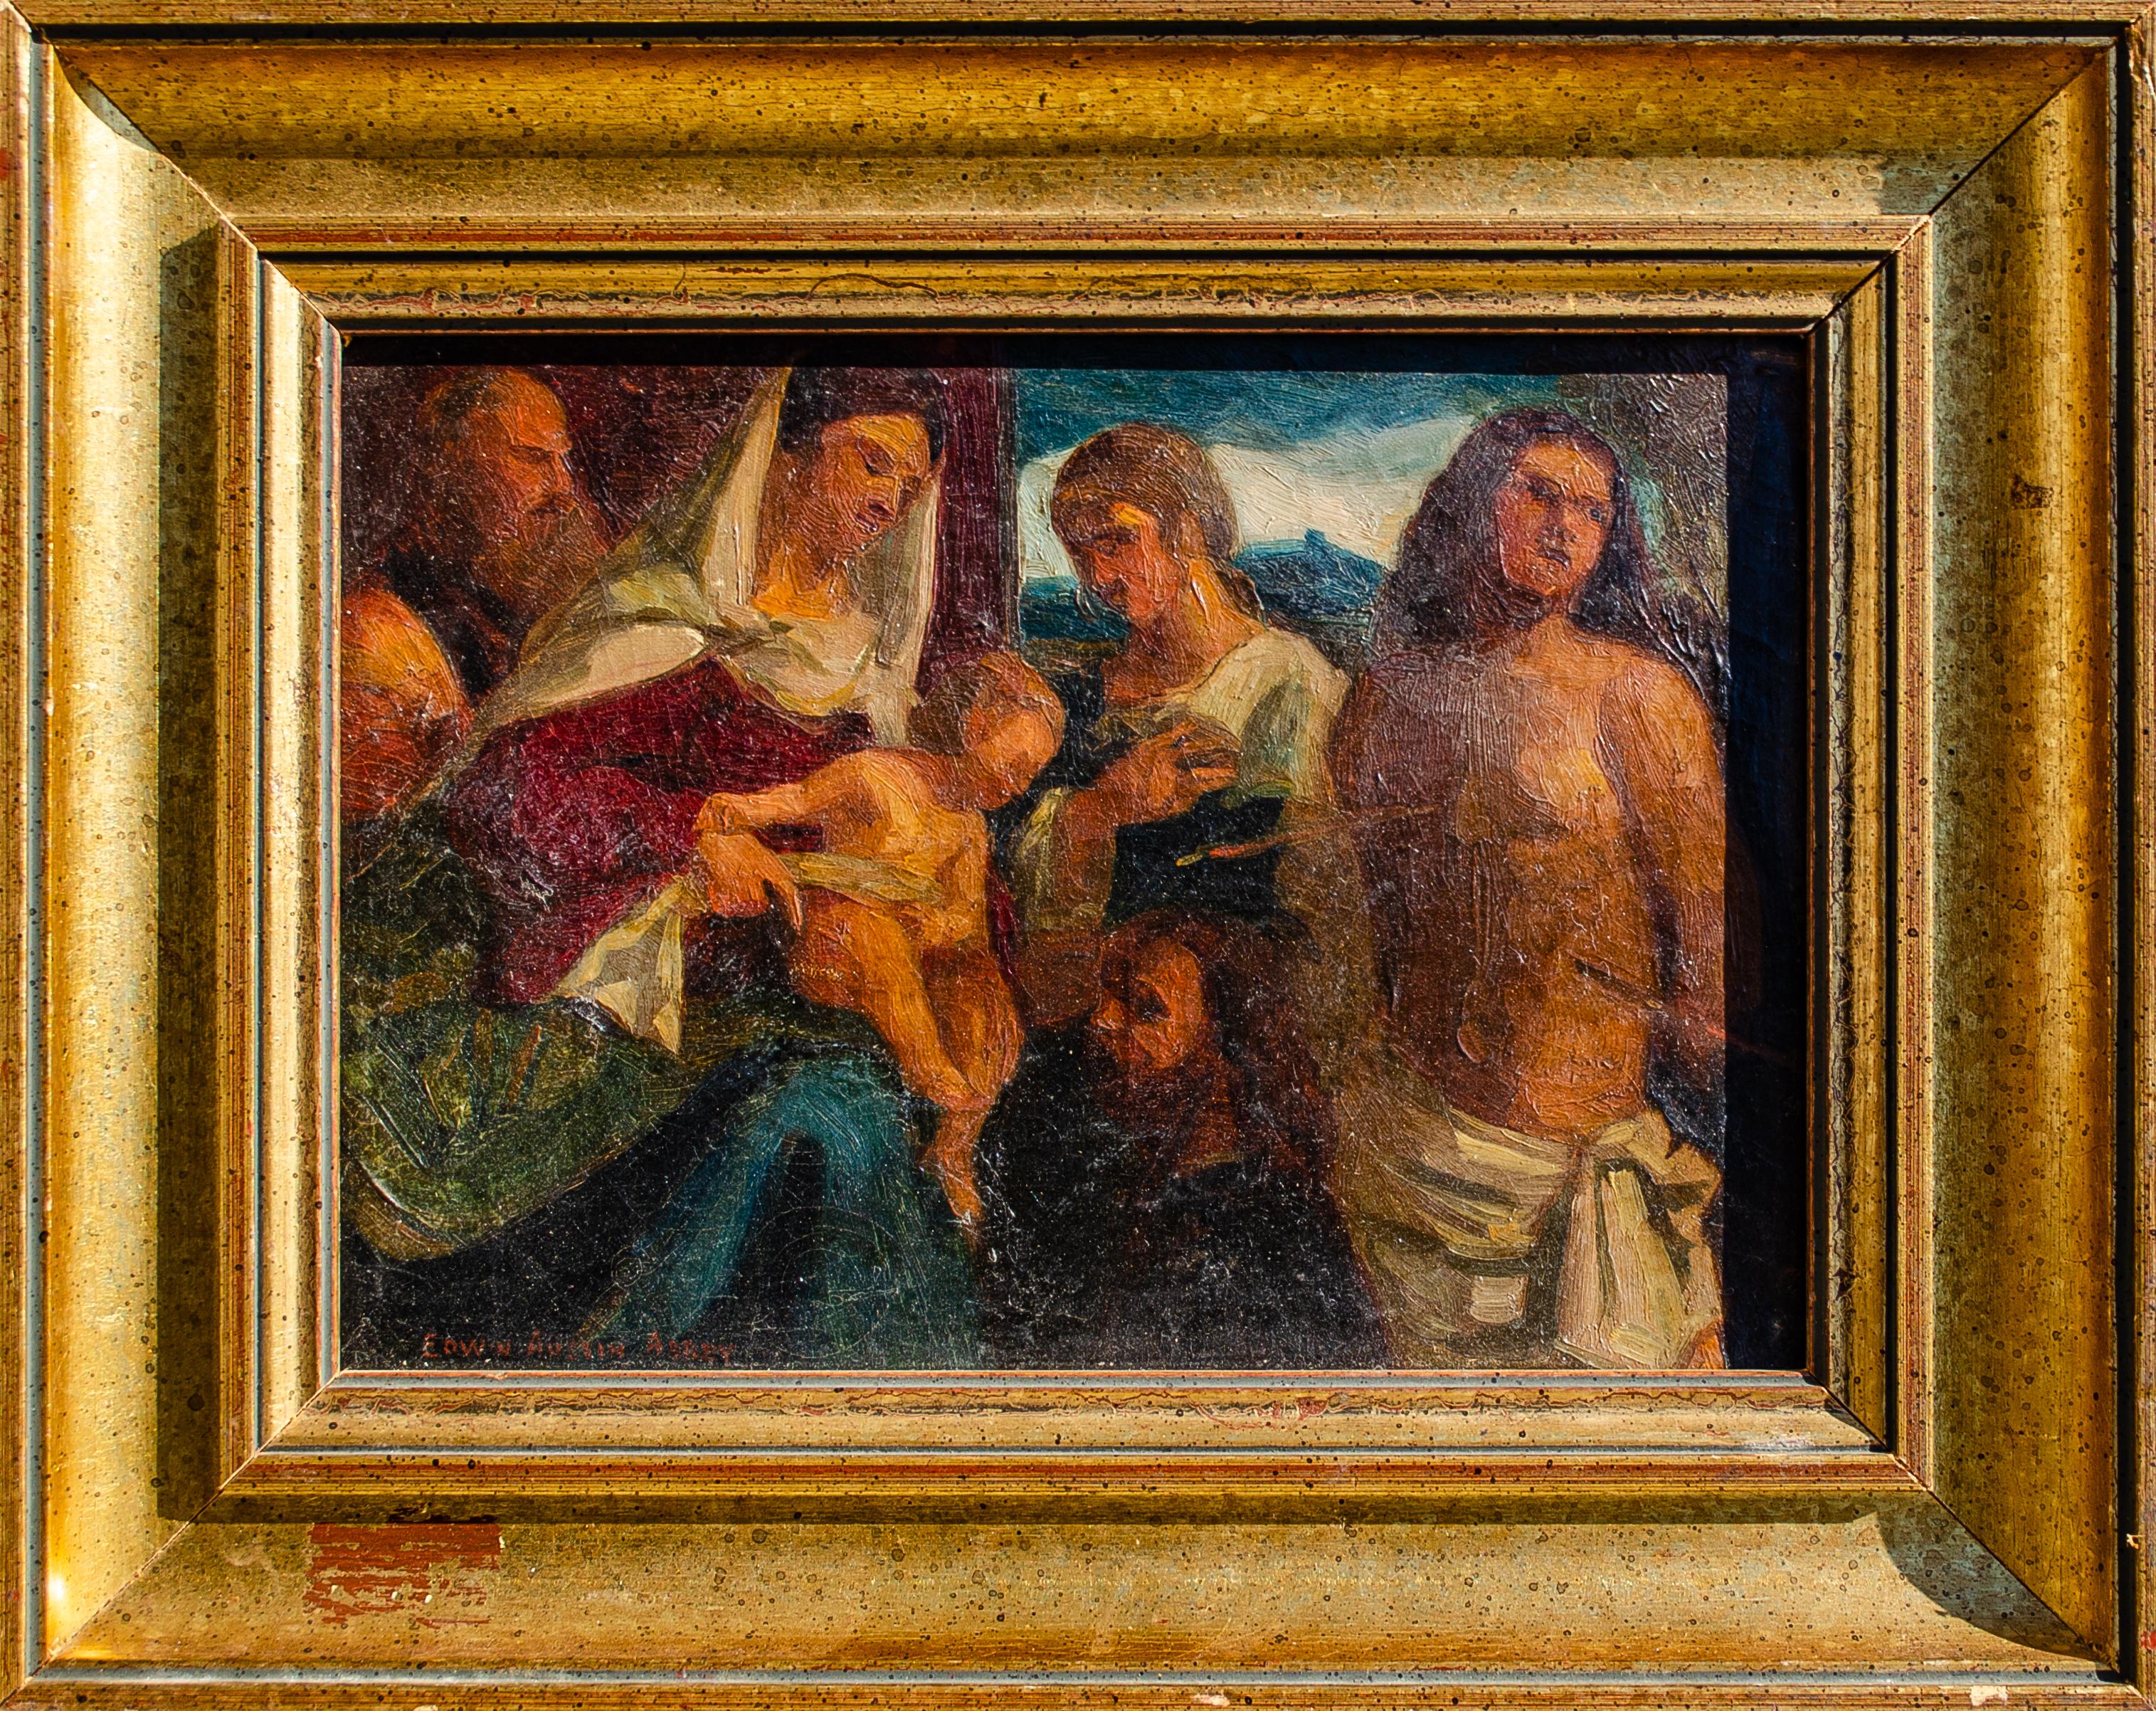 Peinture à l'huile originale d'Edwin Austin Abbey (Américain, 1852-1911) représentant la Vierge et l'Enfant avec des saints, vers la fin du XIXe-début du XXe siècle.
Signé en bas à gauche : Edwin Austin Abbey

Né en 1852, le nom d'Edwin Austin Abbey